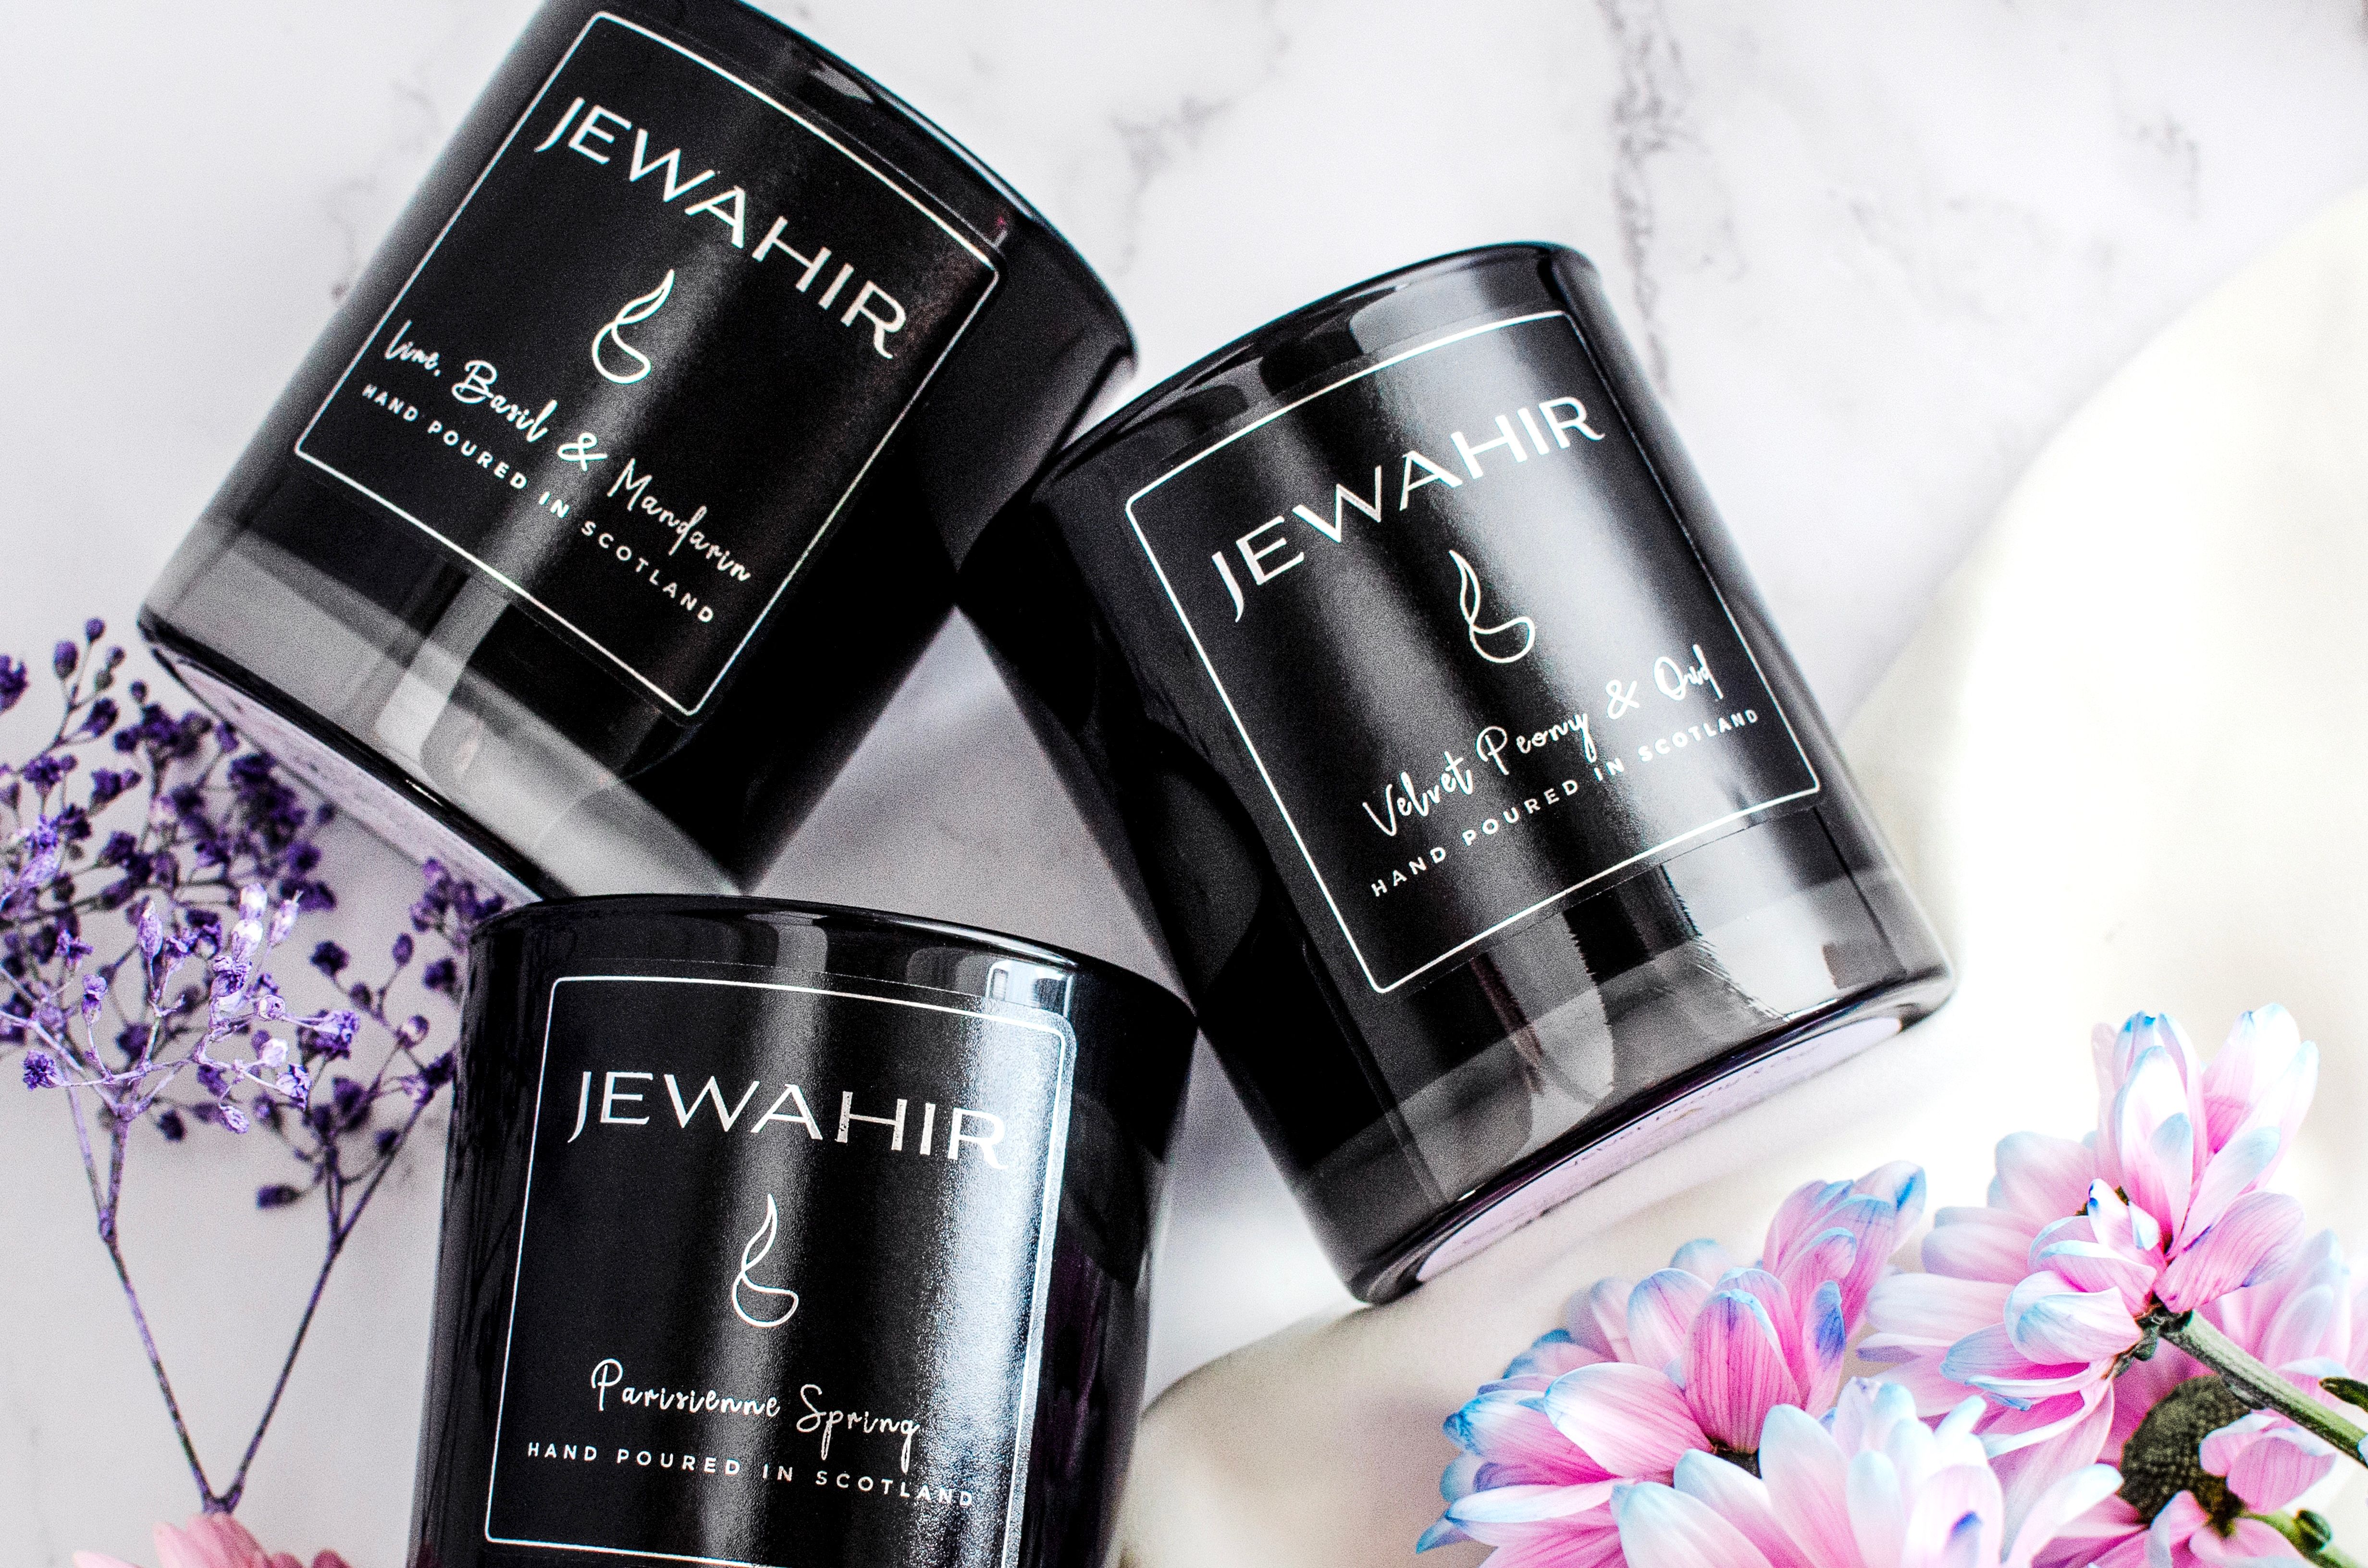 Jewahir Home Fragrances